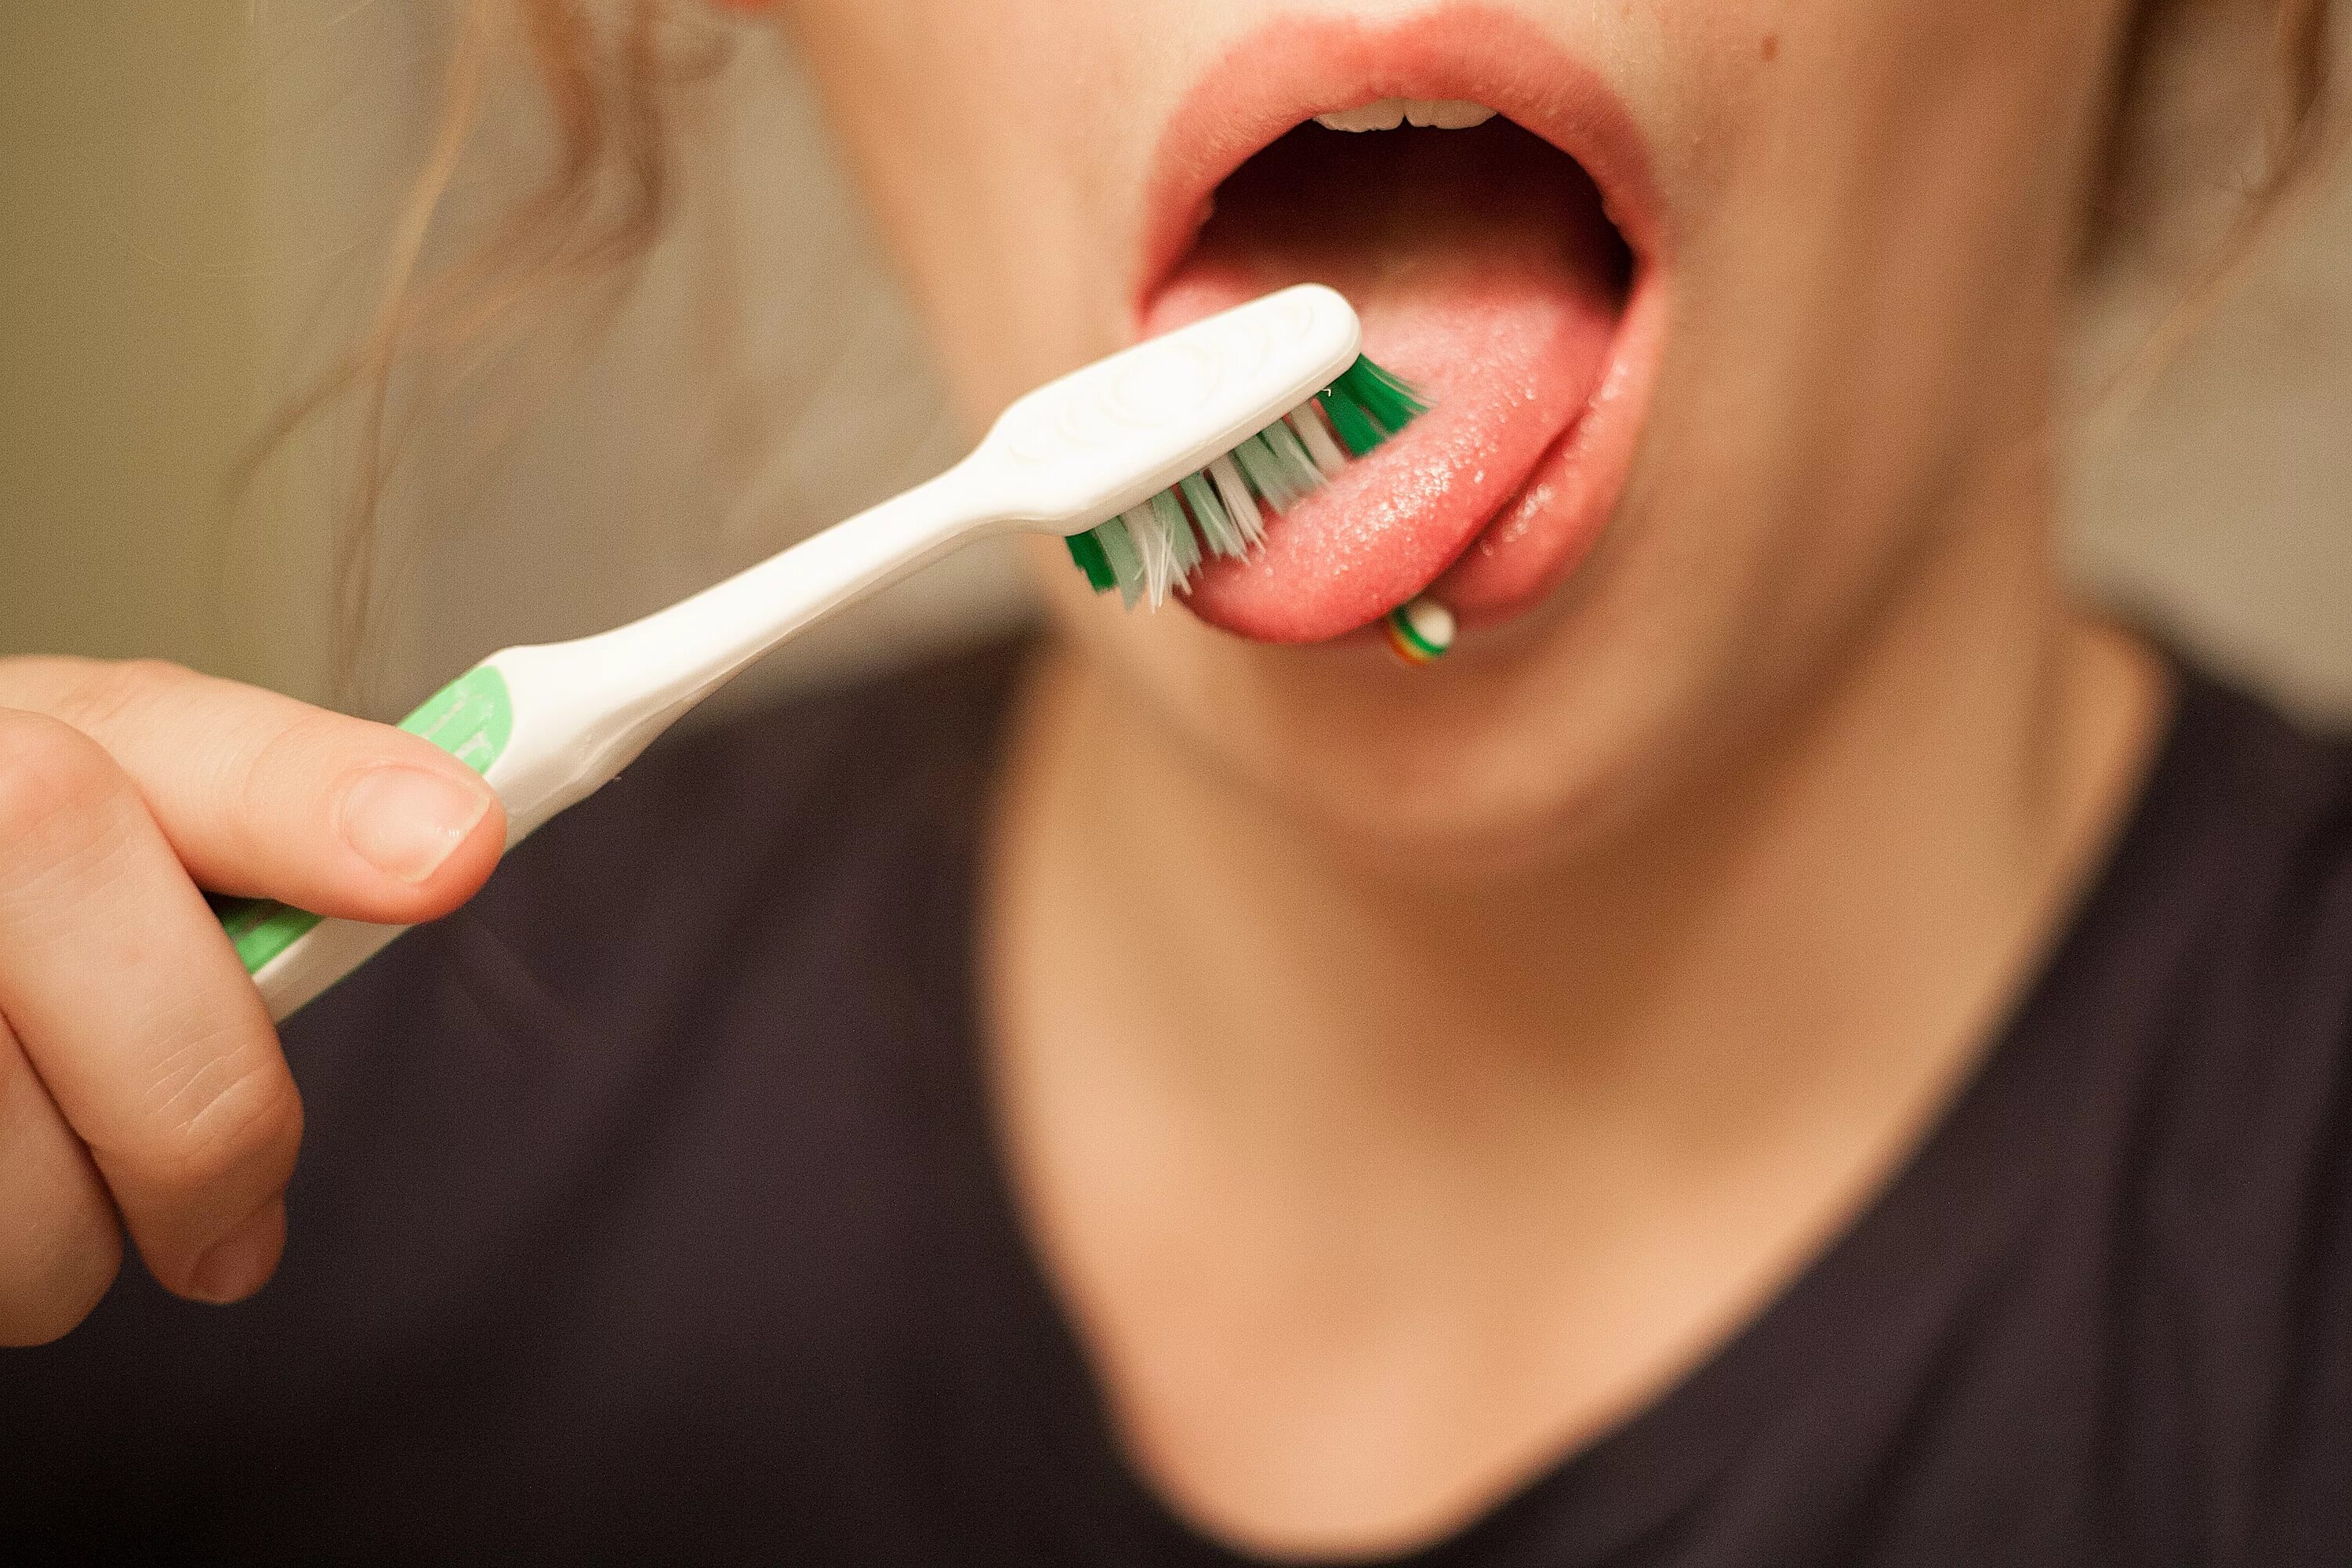 Уход за ртом купить. Чистка языка зубной щеткой. Зубные щётки для чистки зубов и языка. Чистка зубов зубной щеткой.